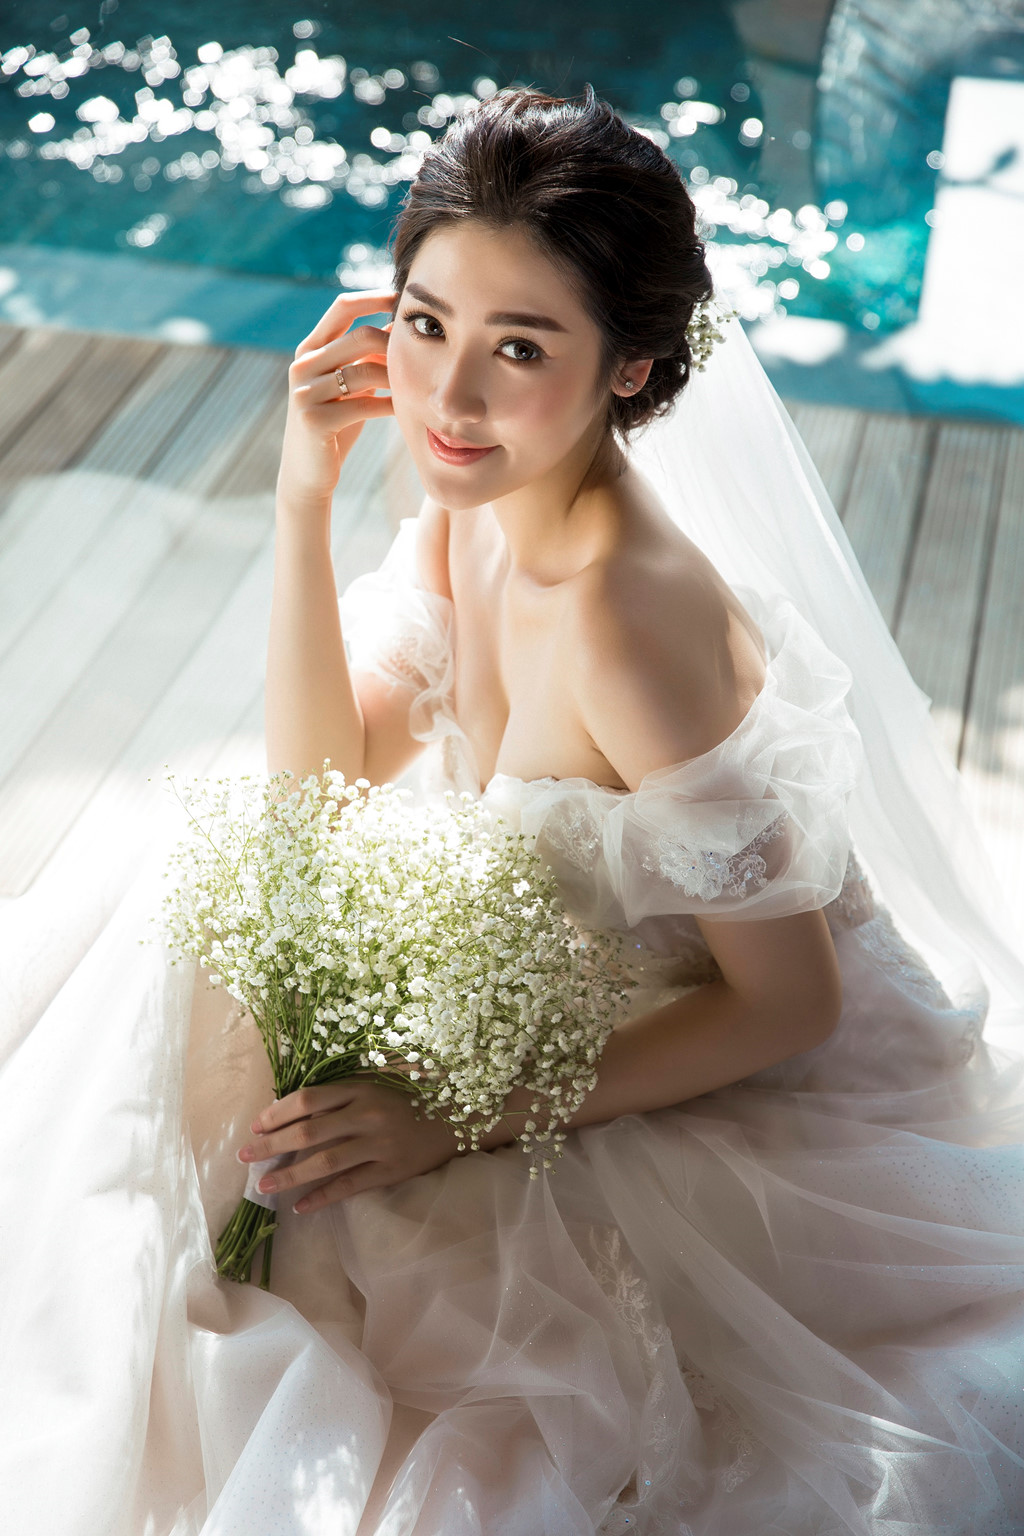 Á hậu Tú Anh khoe vòng 1 gợi cảm trong bộ ảnh cưới cùng bạn trai cũ của Văn Mai Hương - Ảnh 2